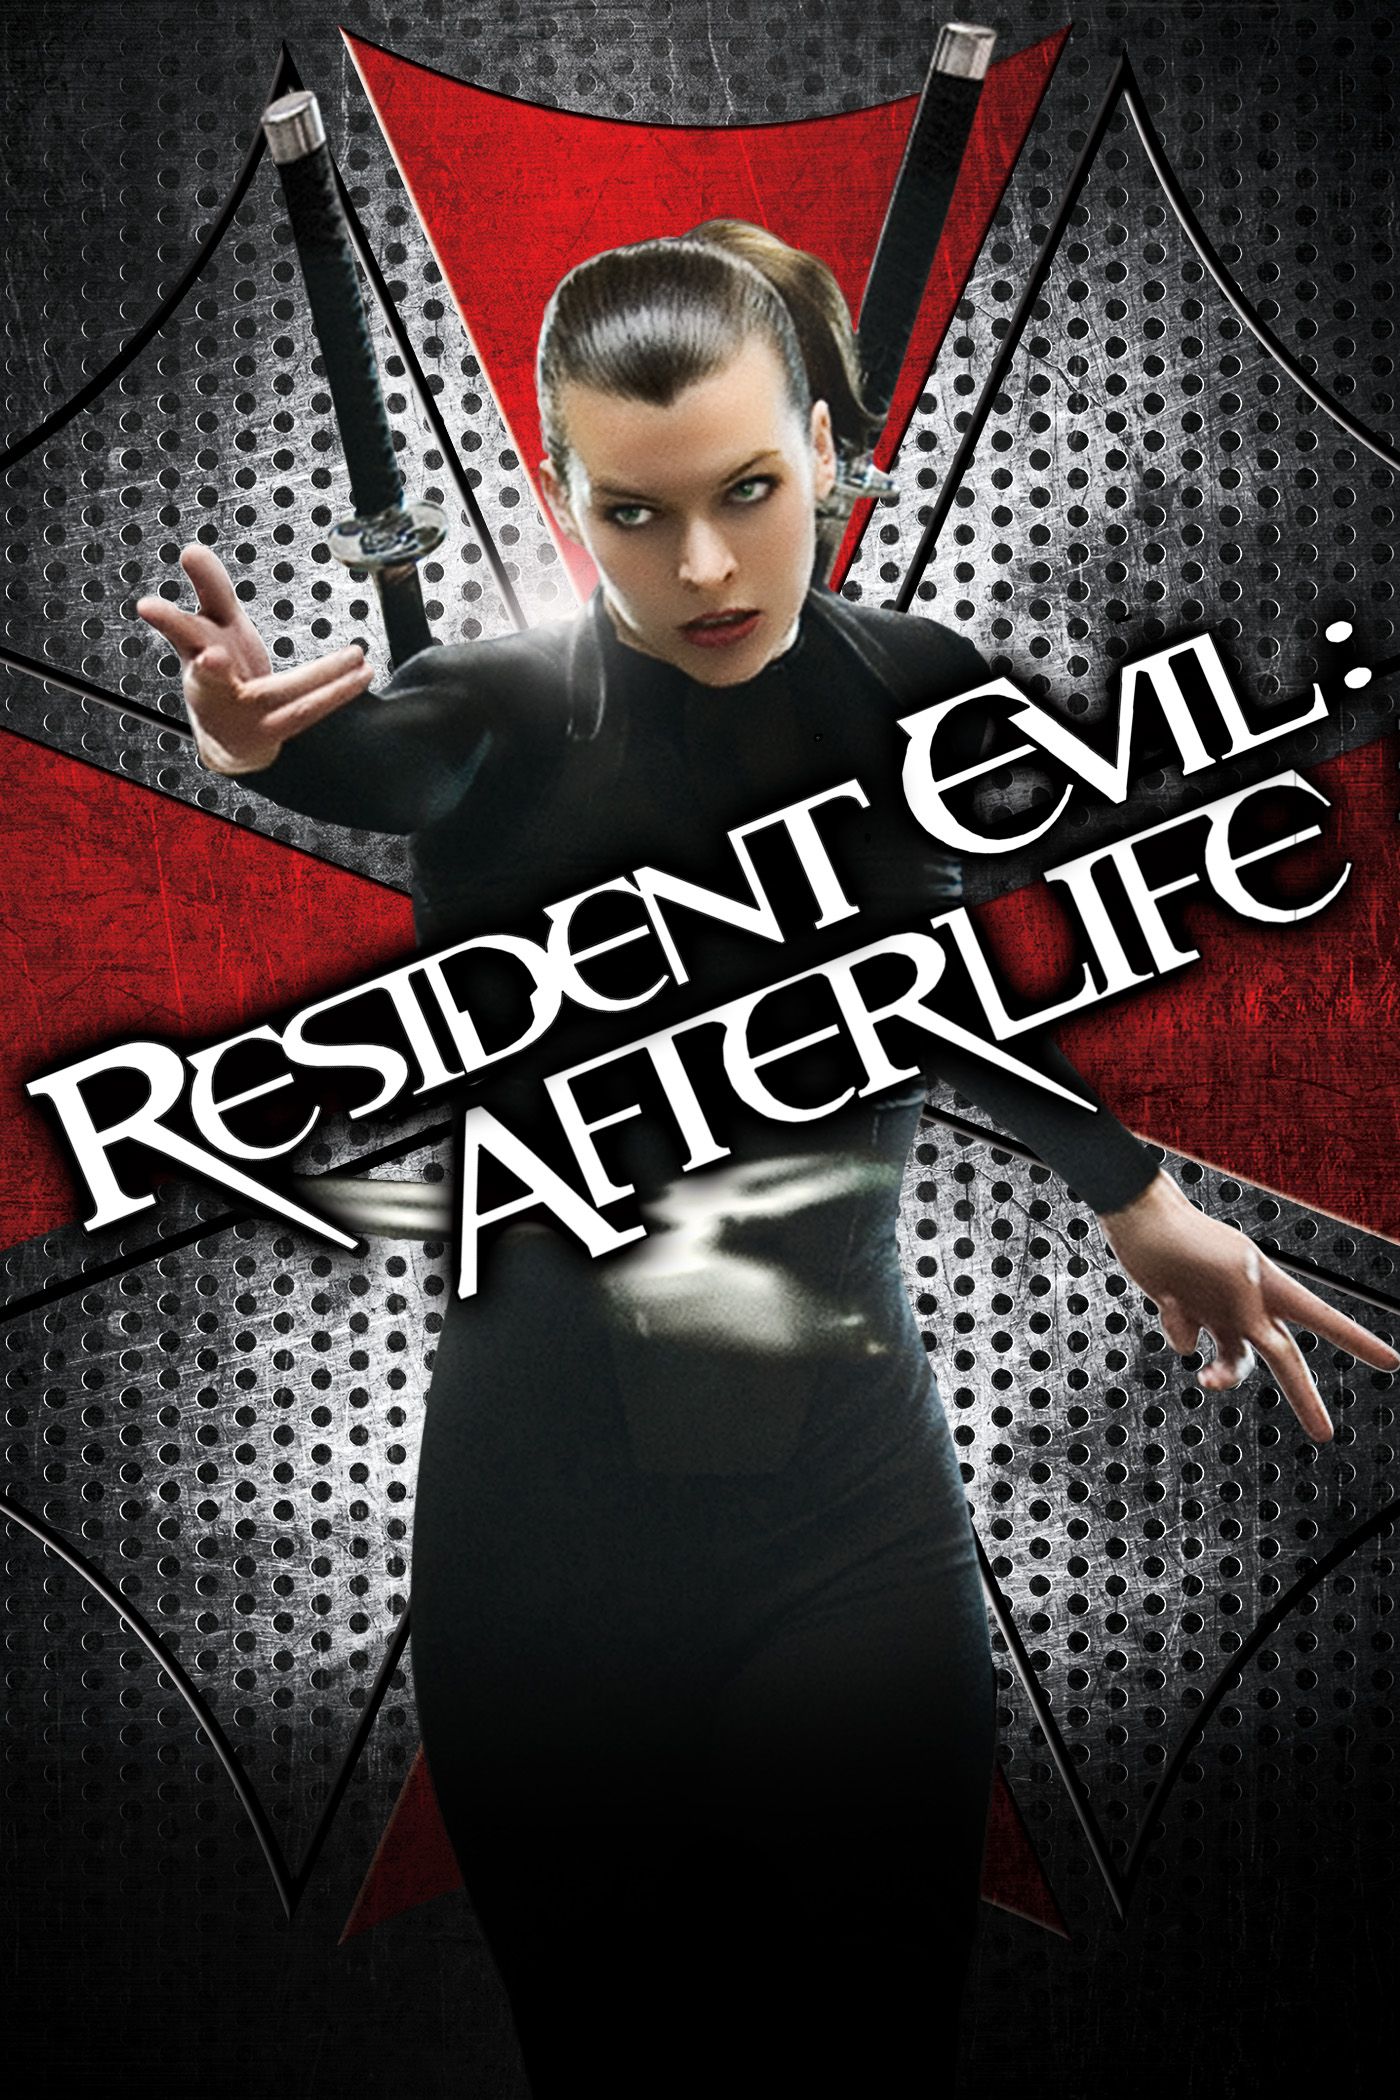 resident evil 6 full movie download